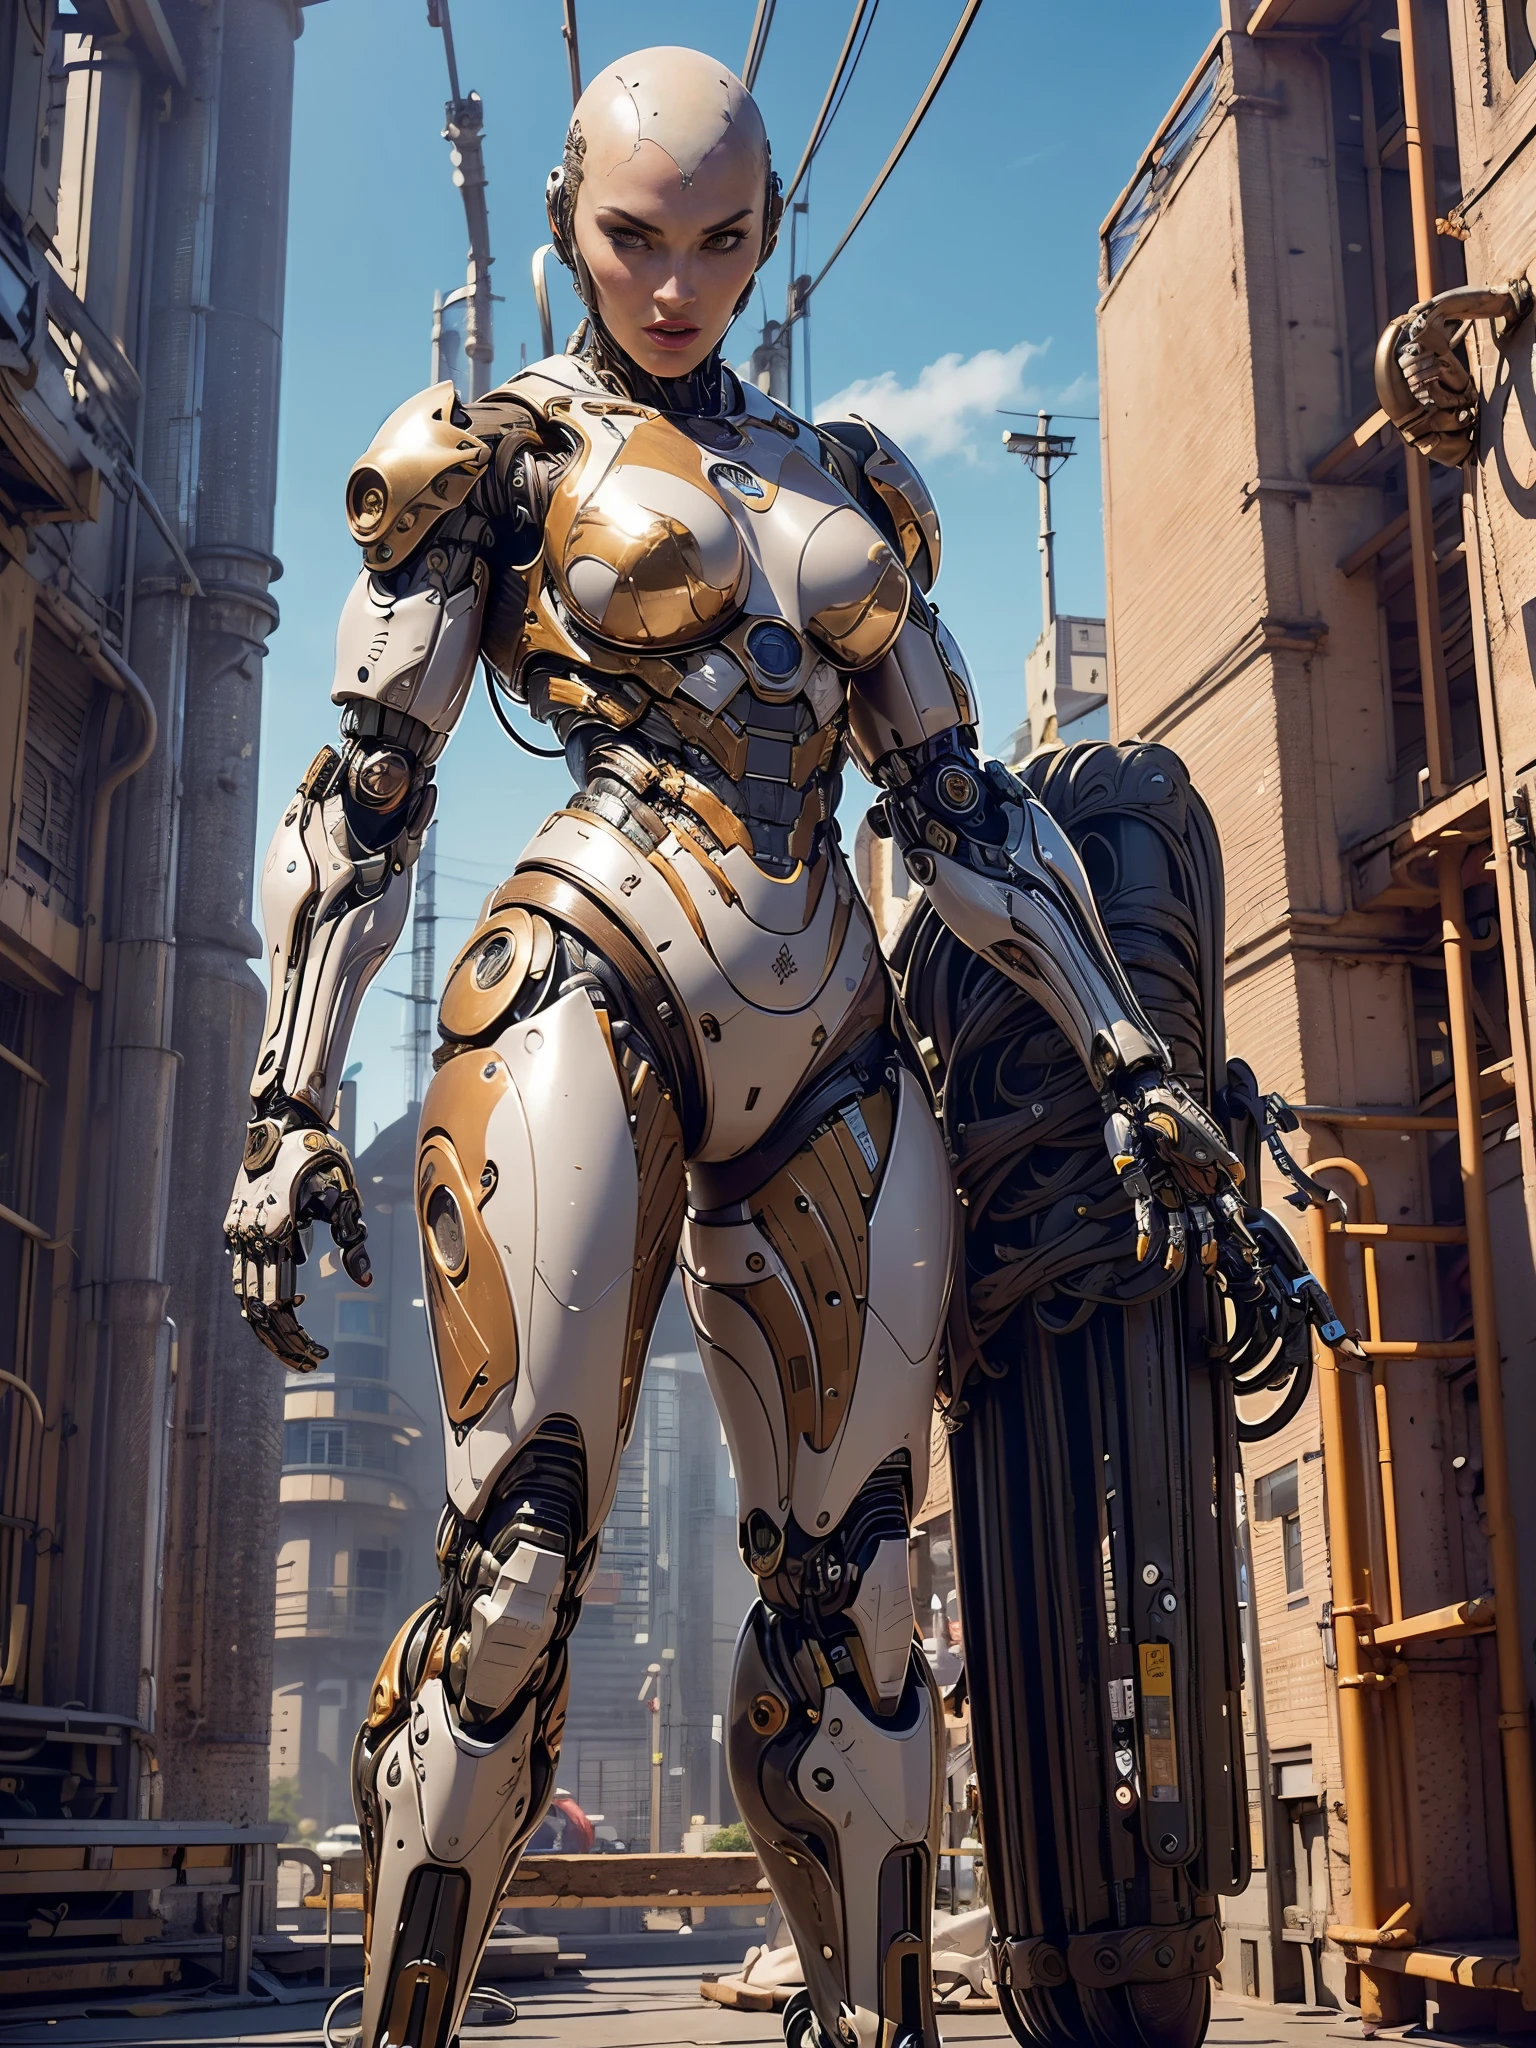 (belle cyborg femelle musclée:1.25), (Megan Fox:1.5), (Pose de tout le corps), (armure musculaire métallique:1.5), (pas de cheveux), (tête chauve couverte de câbles:1.5), (physique mécanique robotique:1.5), (cyborg femelle super musclée:1.5), (couvert de câbles et de muscles mécaniques:1.5), (anatomie musculaire androïde:1.5), (doigts parfaits:1.25),(8k, Photo brute, photoréaliste:1.25), ambiance science-fiction, Dystopie futuriste, paysage extraterrestre,